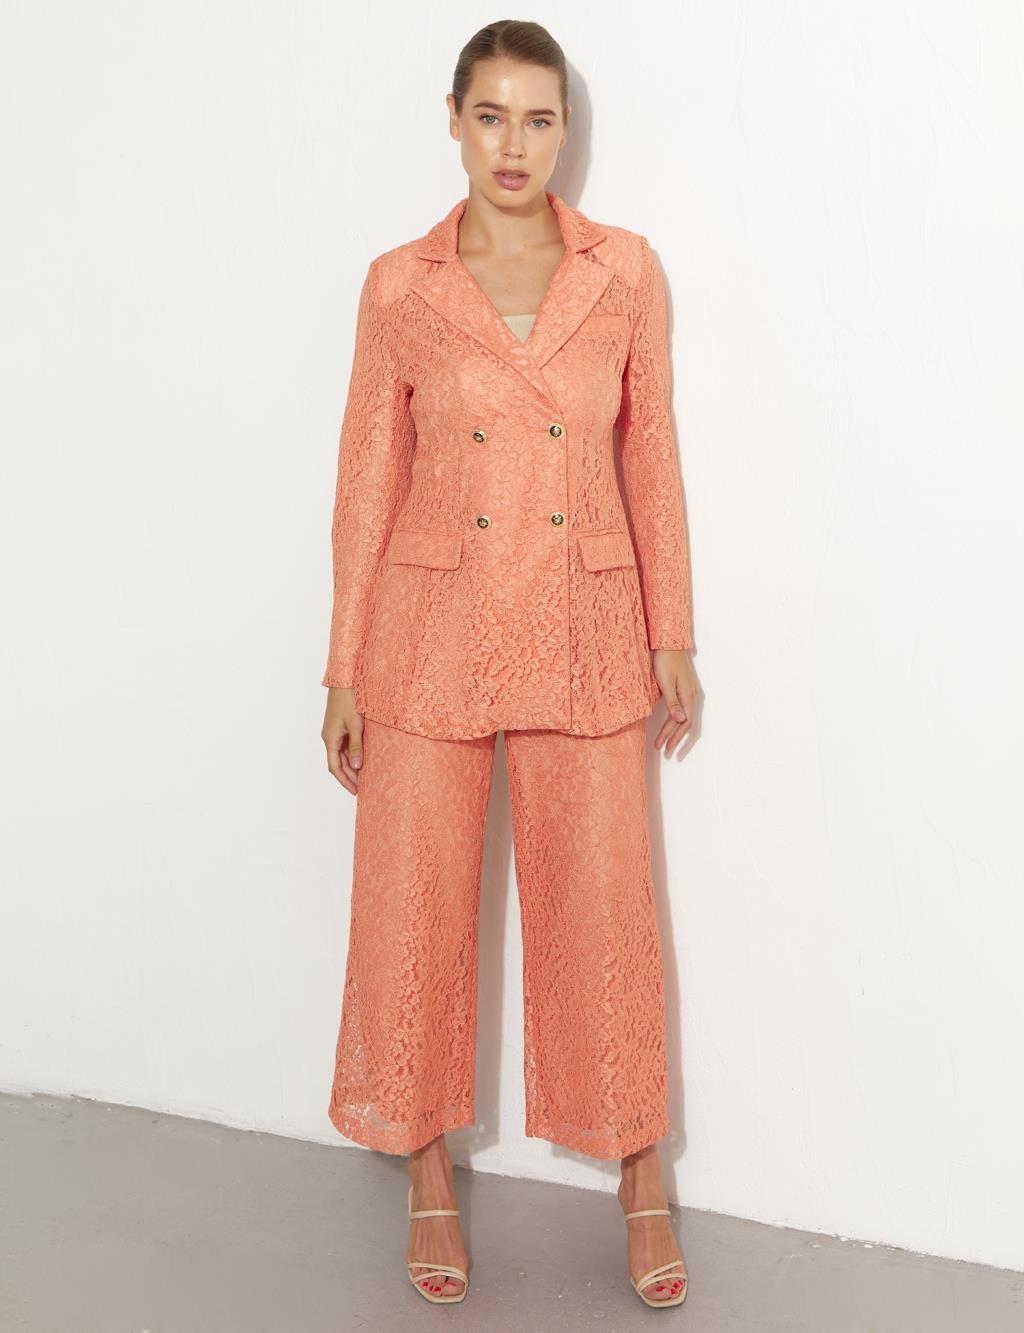 Lacy Jacket Pants Double Suit Peach